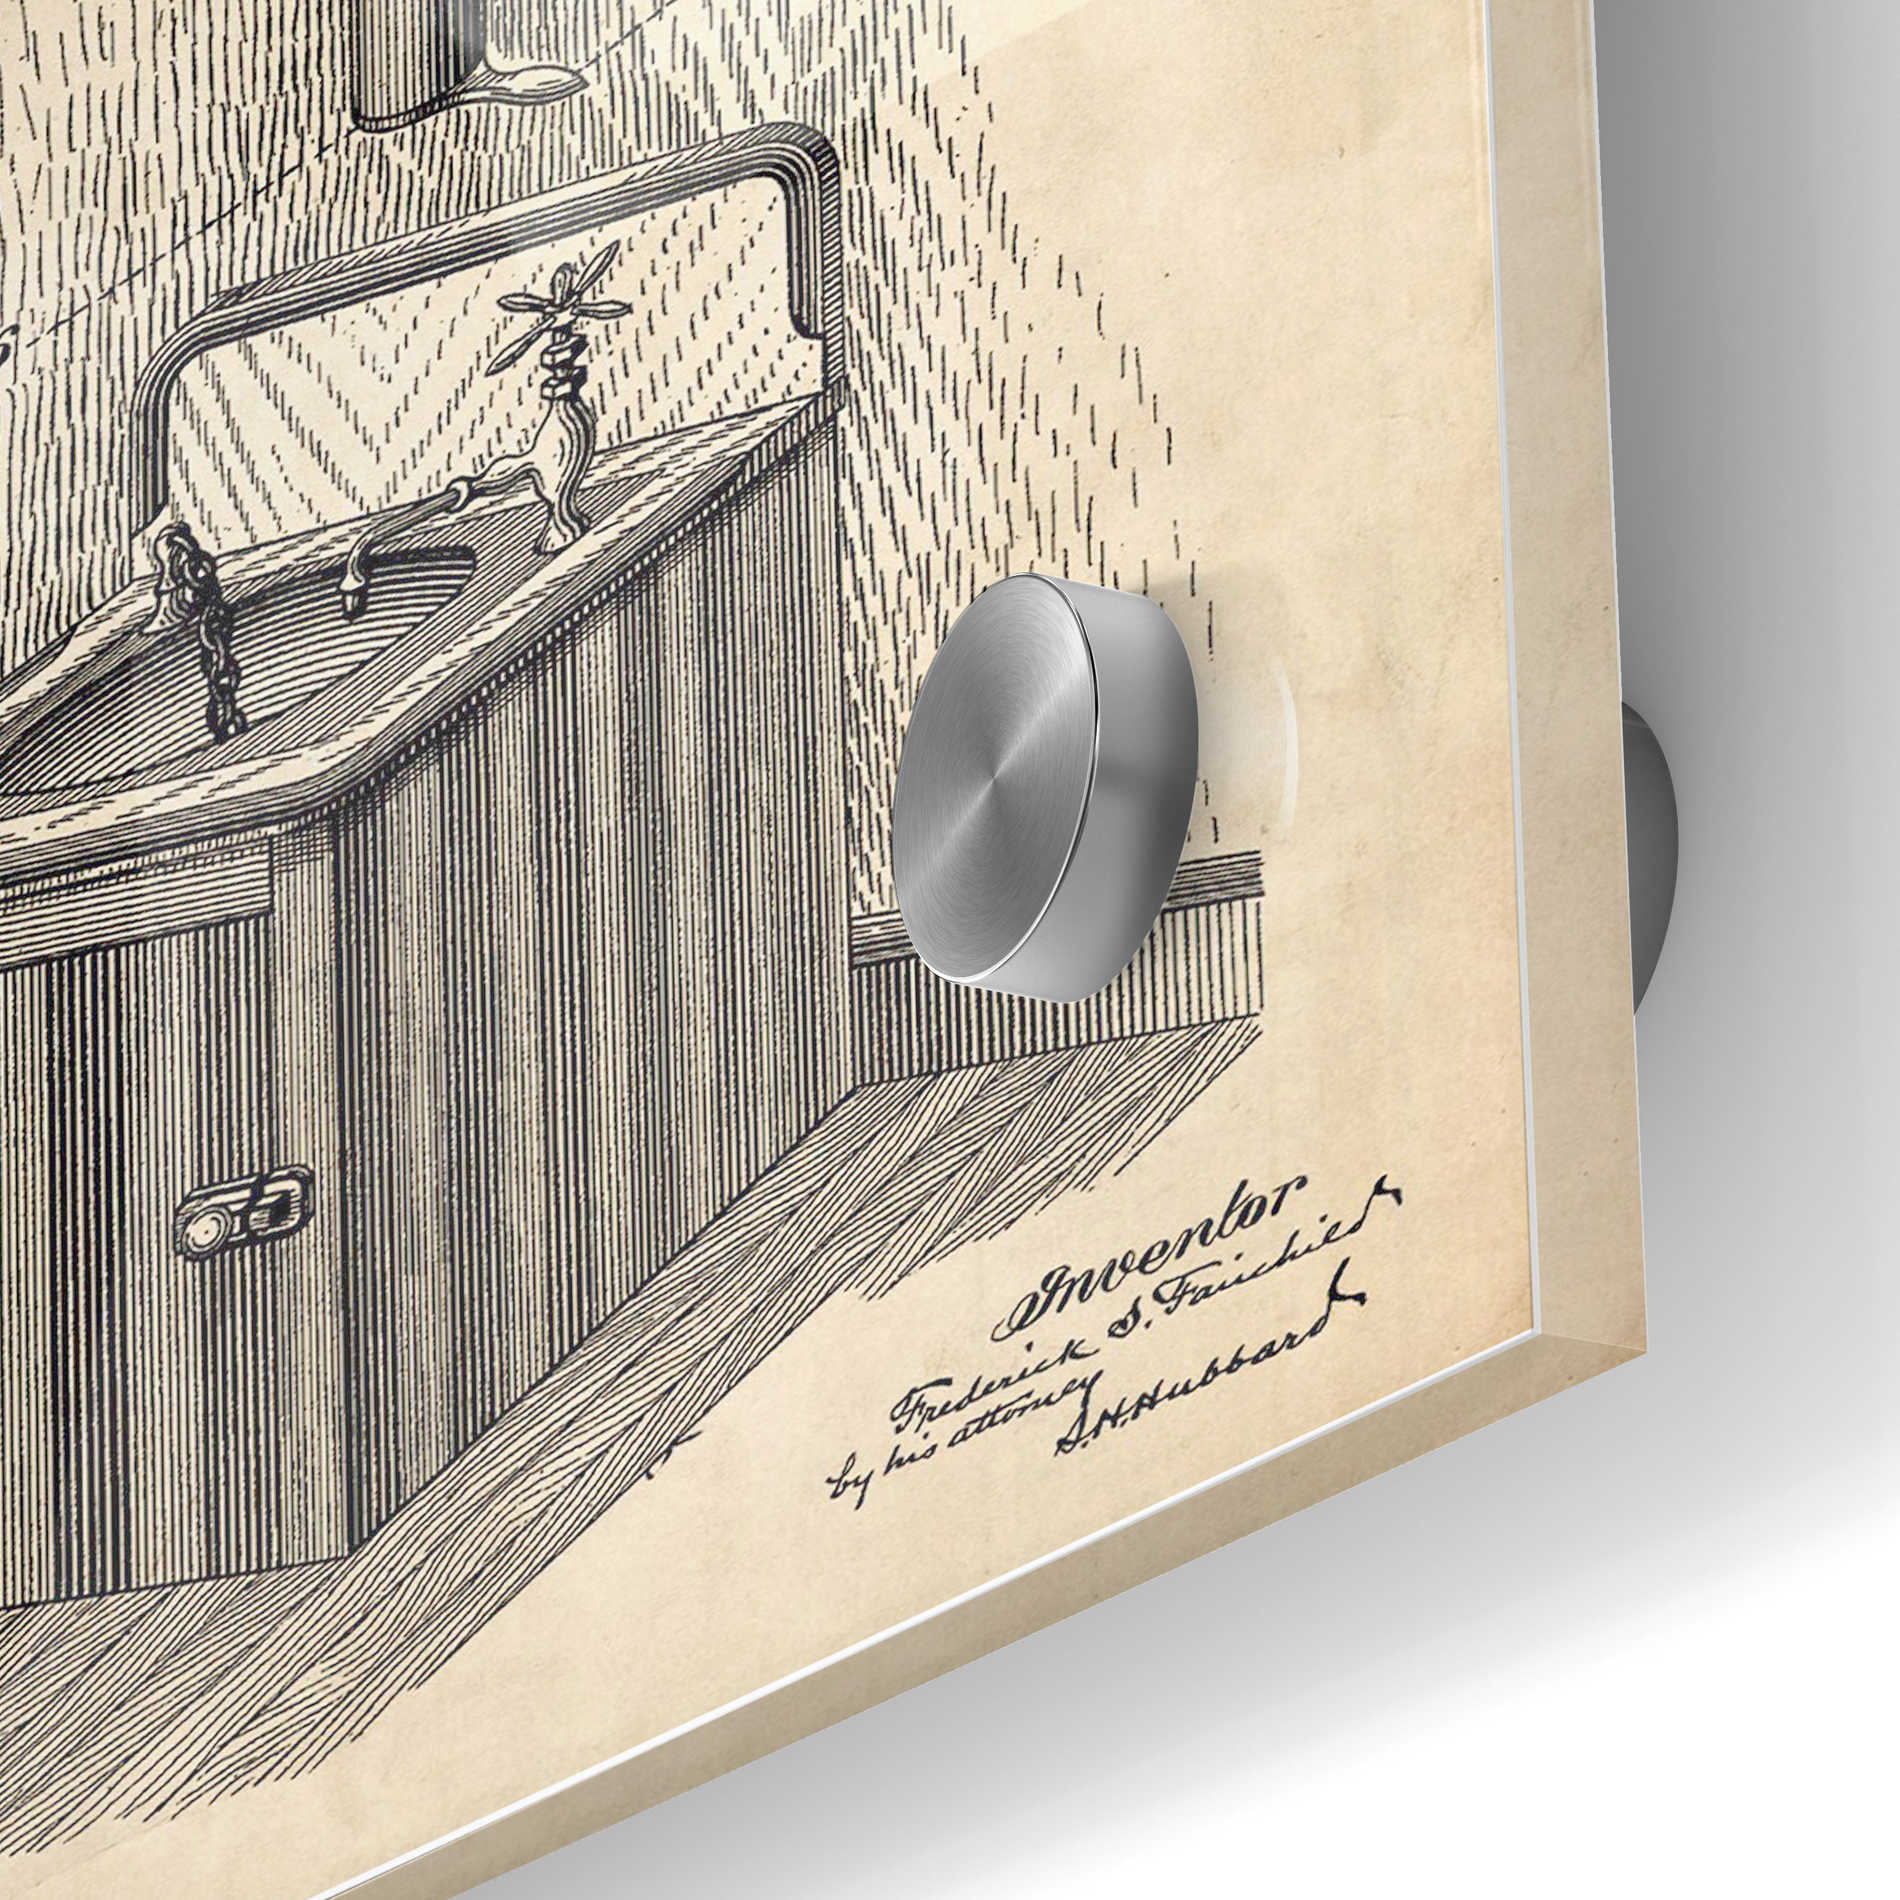 Epic Art 'Soap Dispenser Blueprint Patent Parchment' Acrylic Glass Wall Art,24x36